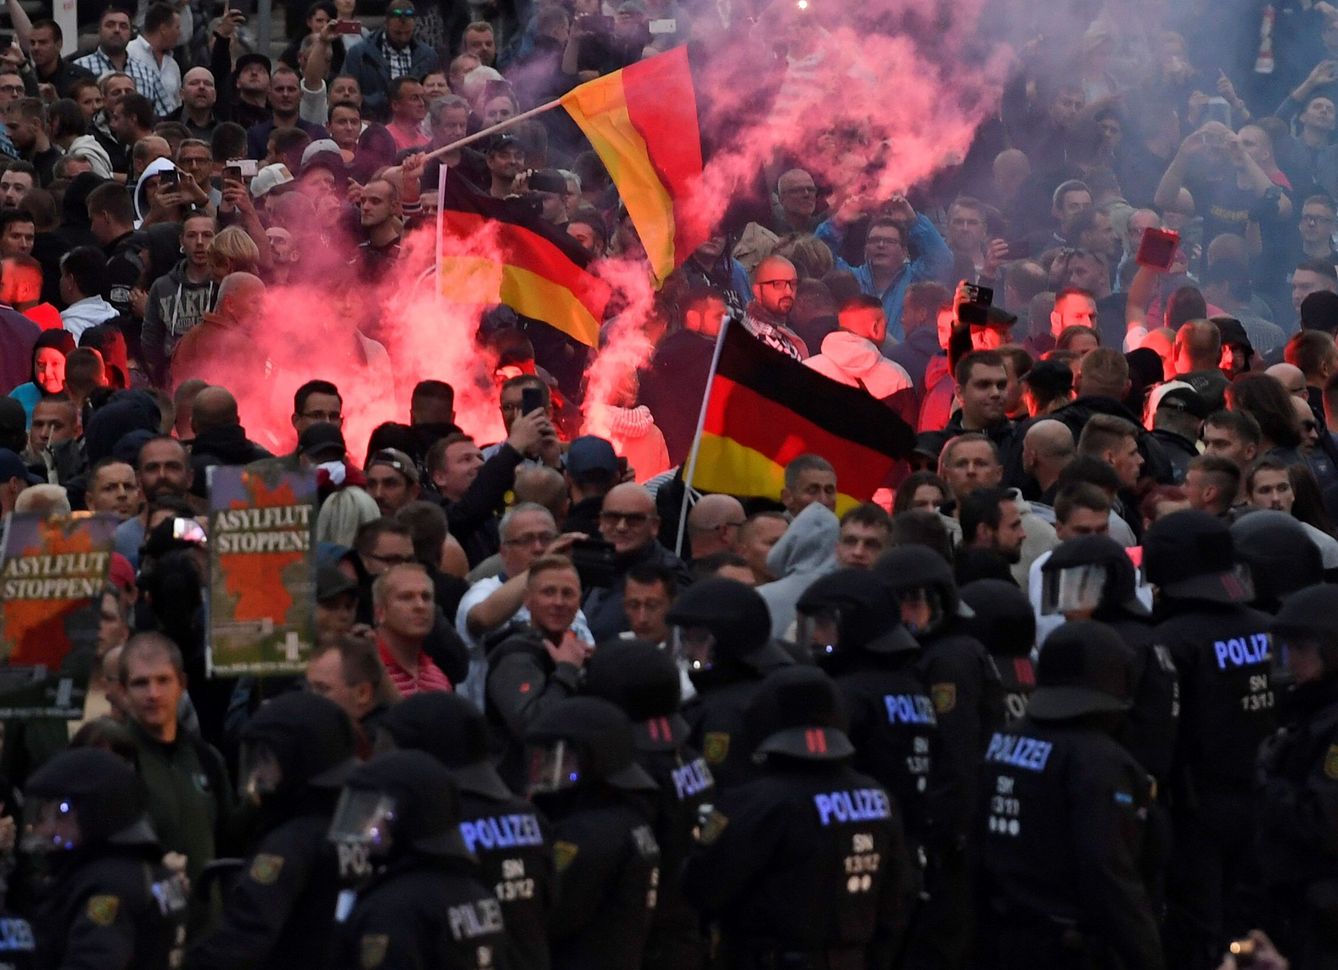 Los disturbos en Chemnitz derivaron en 'cacerías' de inmigrantes que horrorizaron a Alemania (EFE)